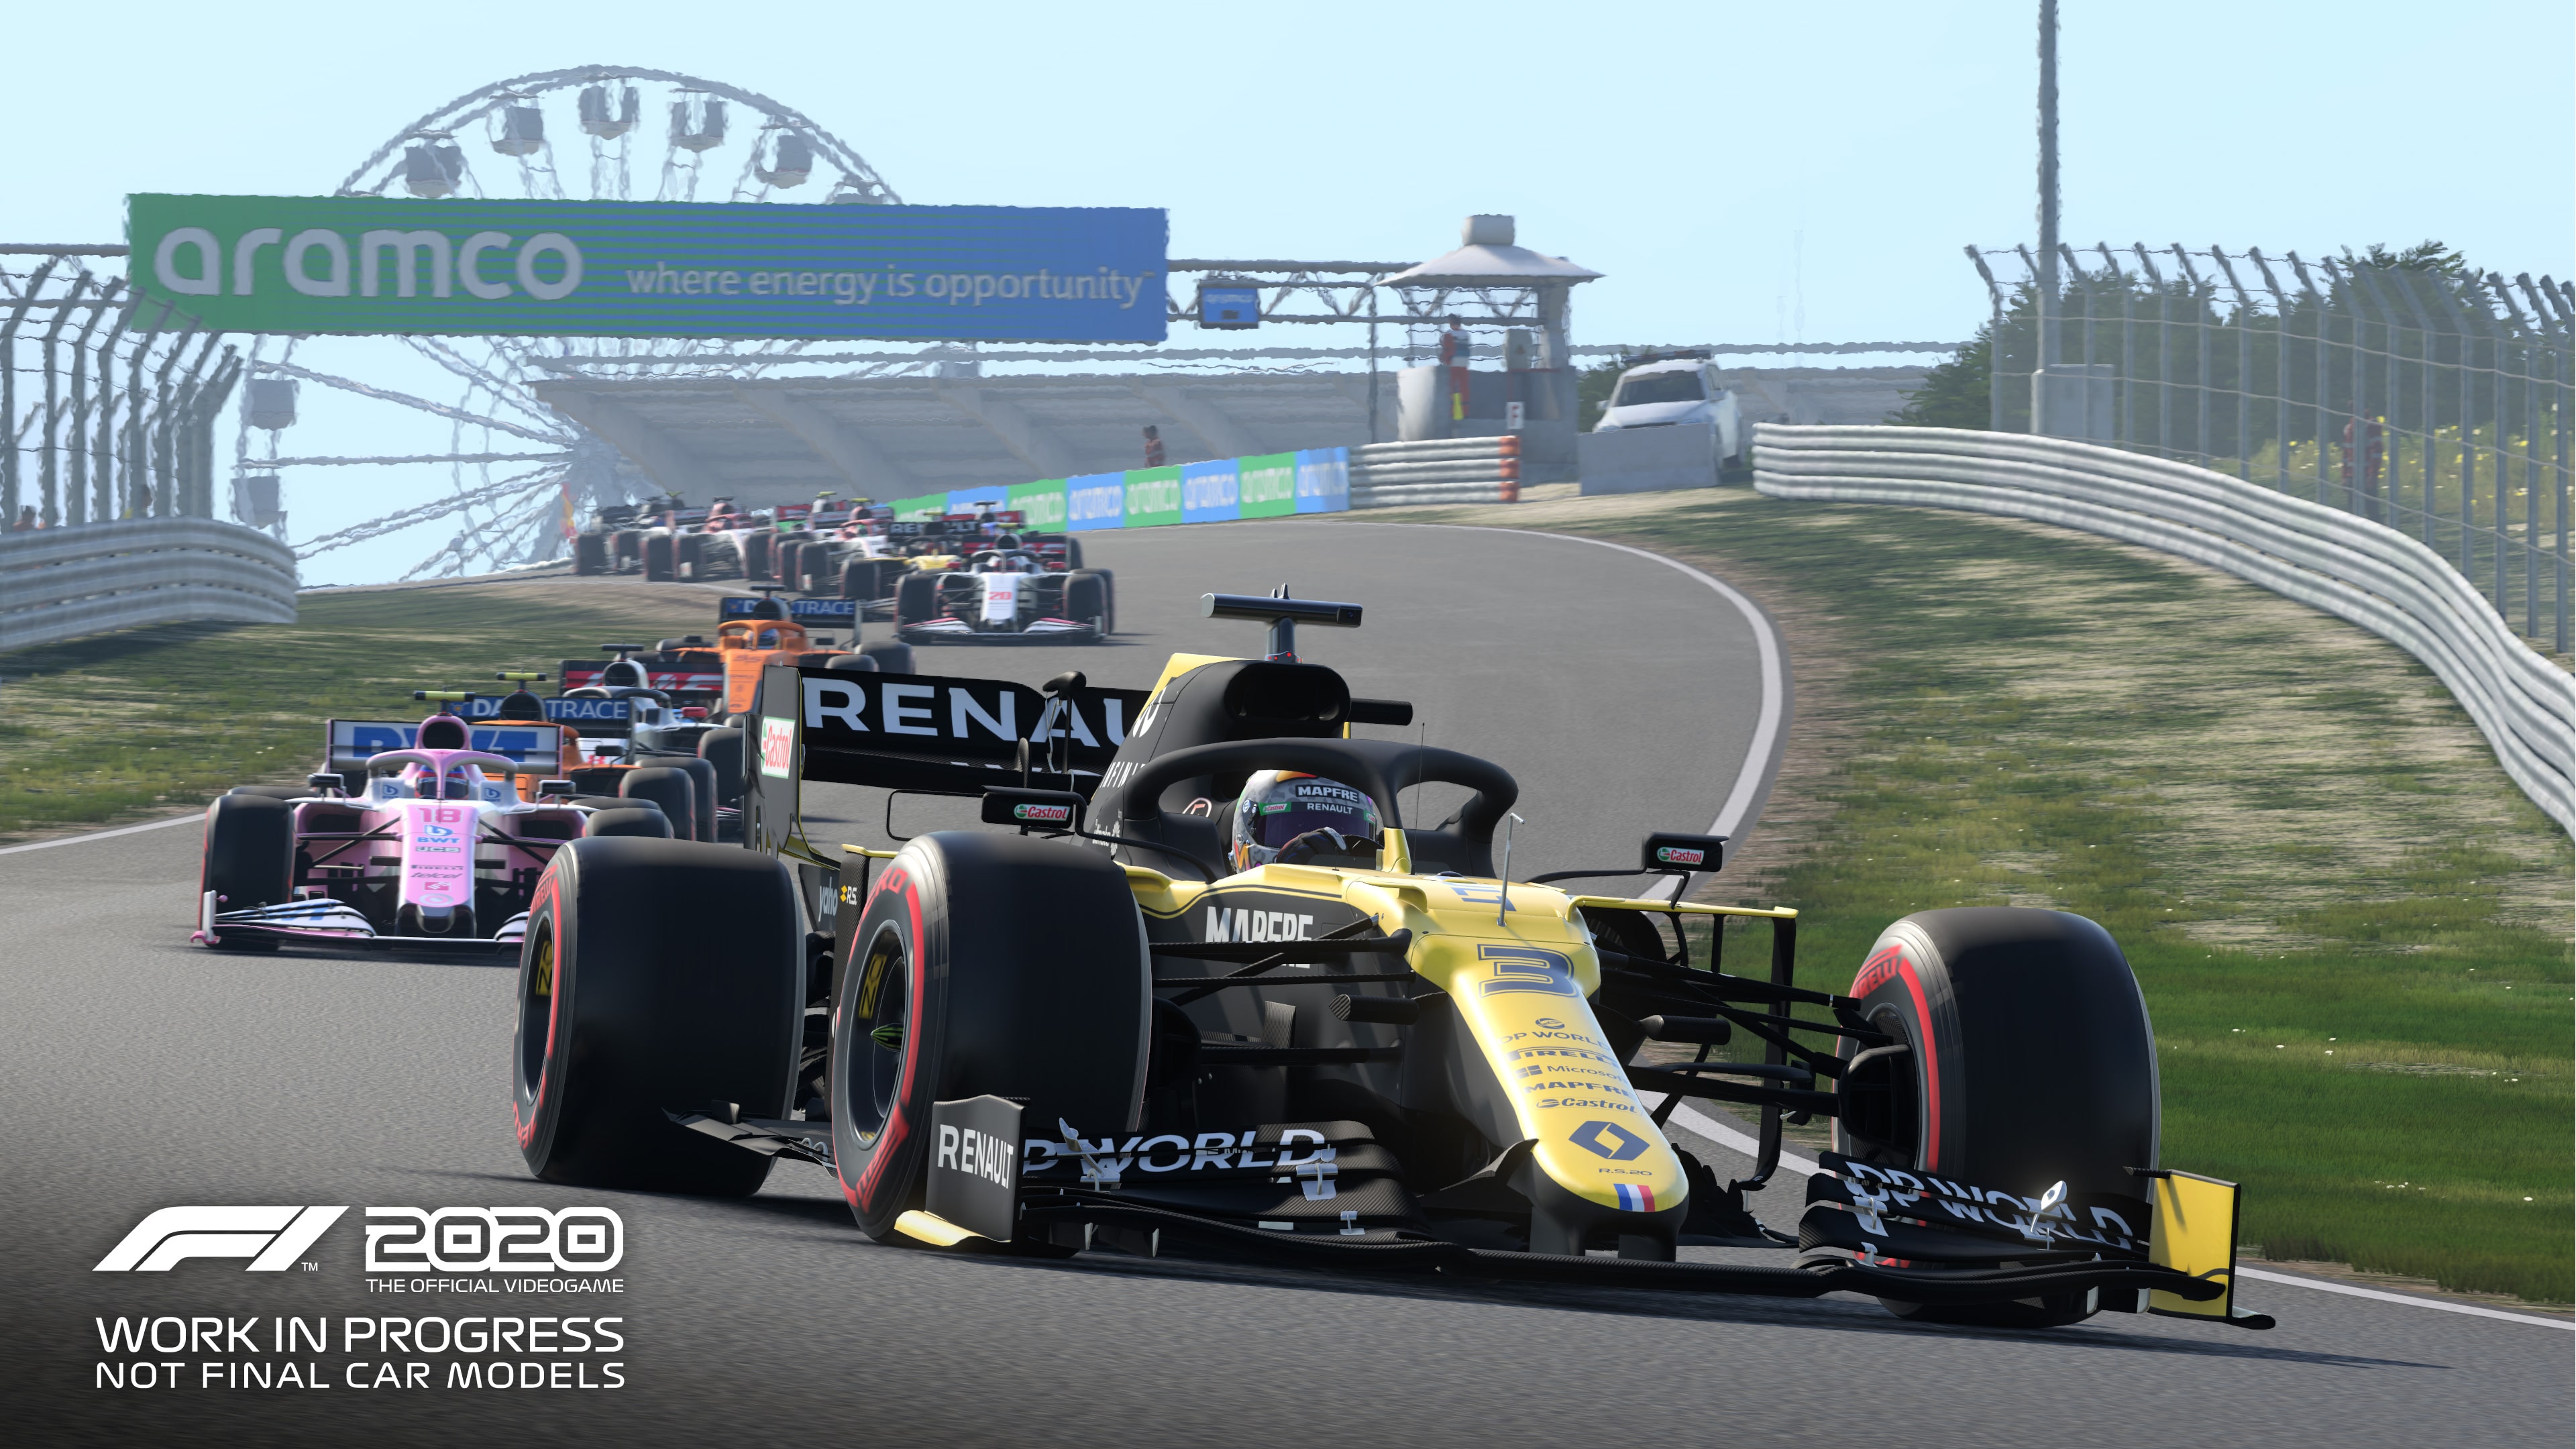 Circuit Zandvoort F1 2020 game trailer